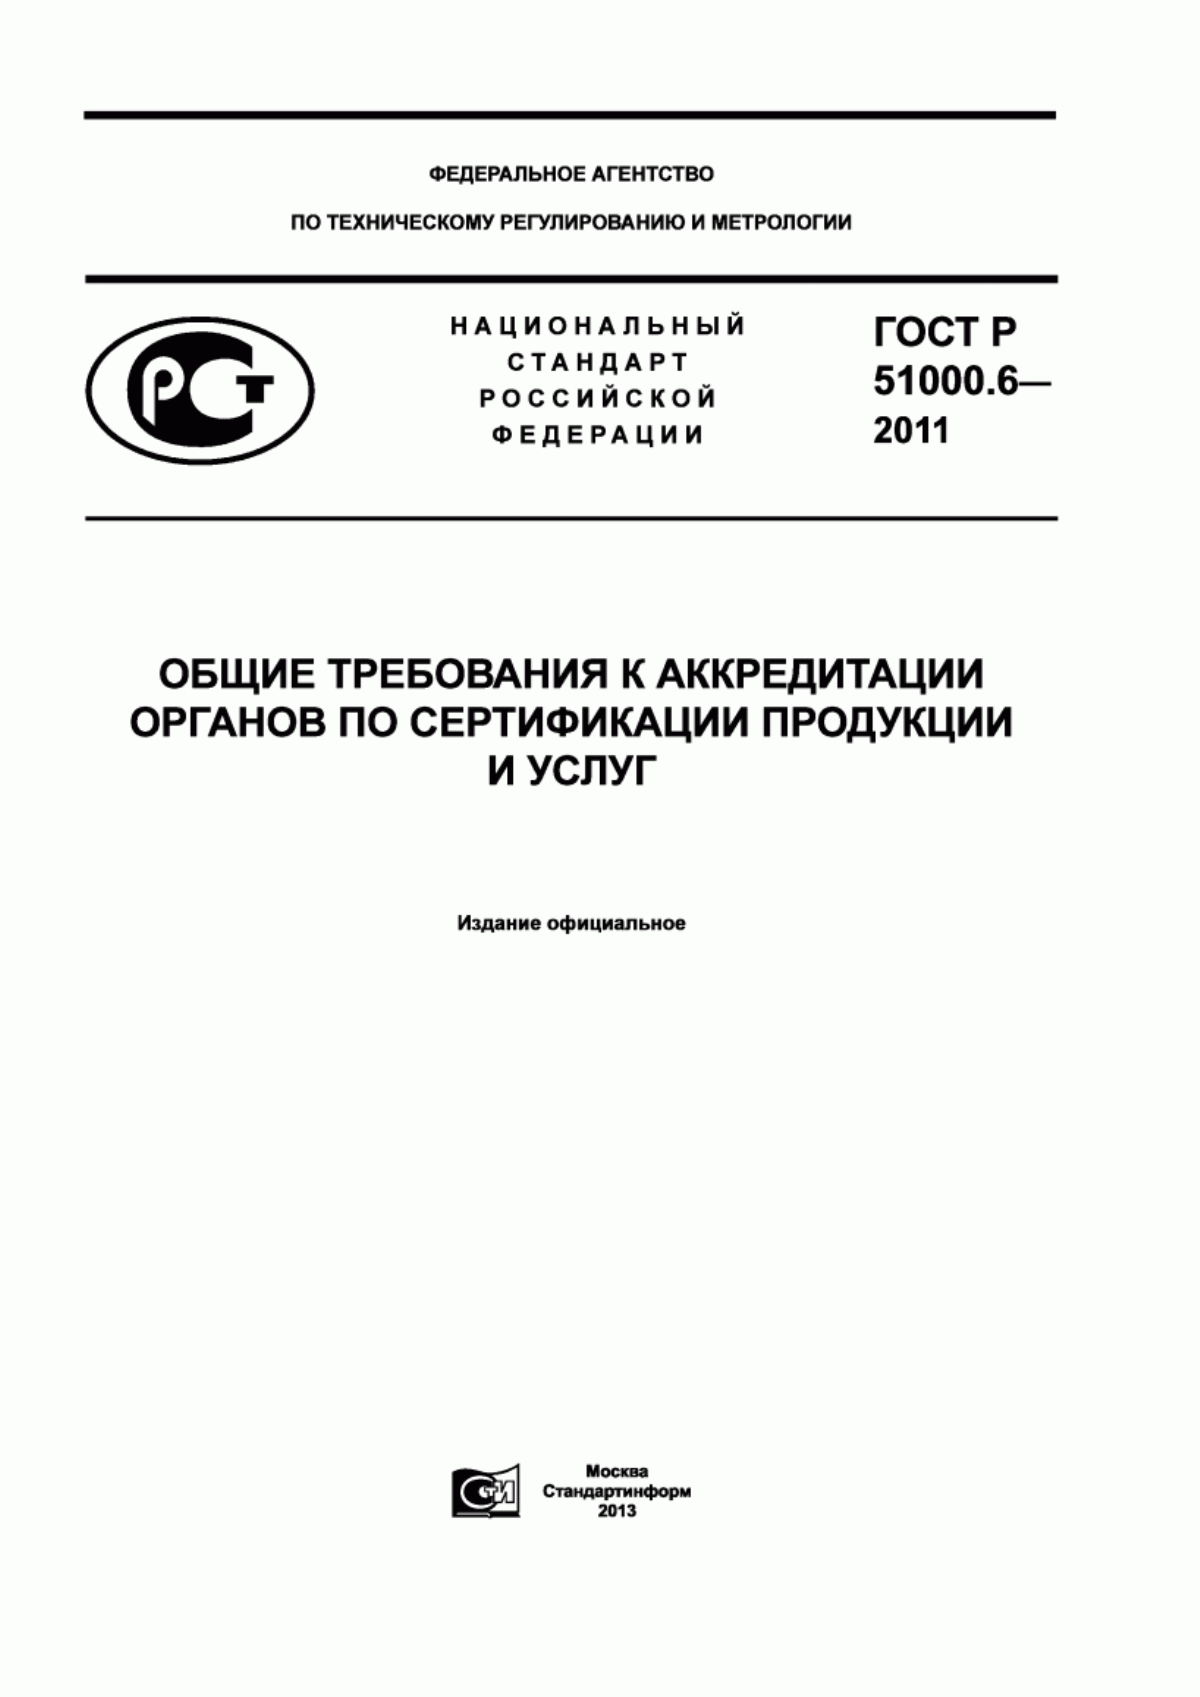 ГОСТ Р 51000.6-2011 Общие требования к аккредитации органов по сертификации продукции и услуг